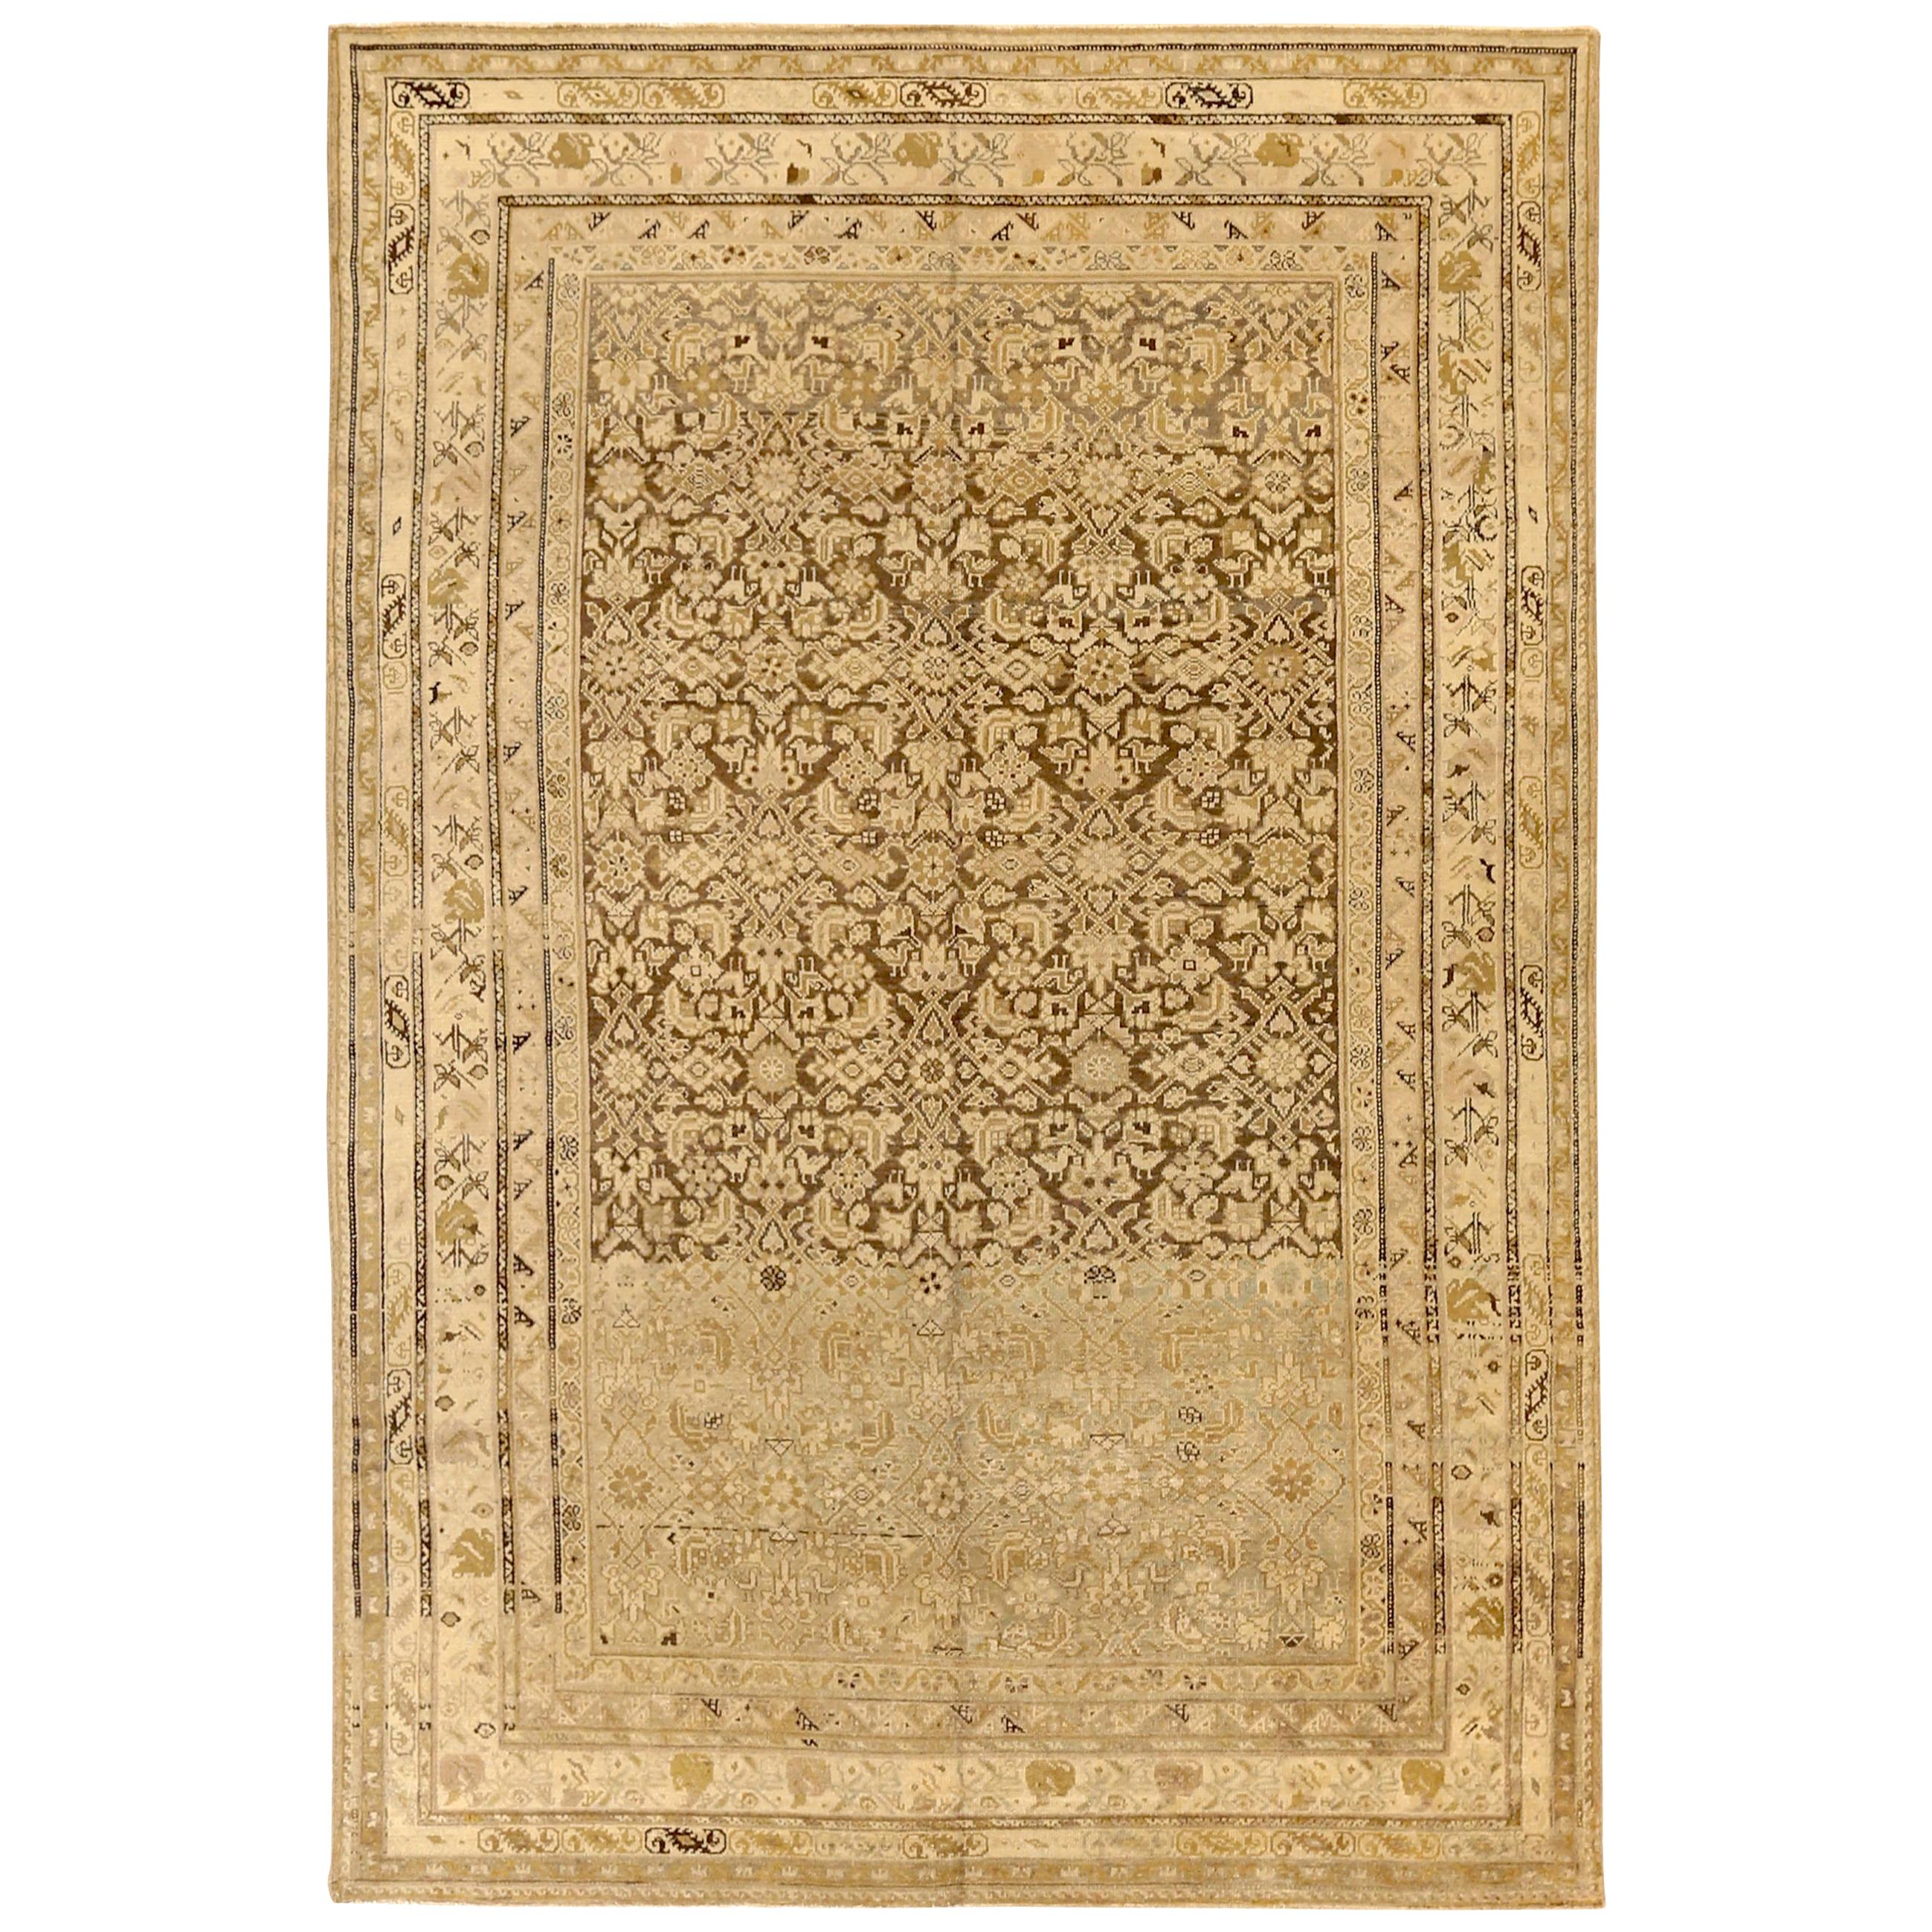 Tapis persan ancien Malayer à motifs floraux sur fond ivoire